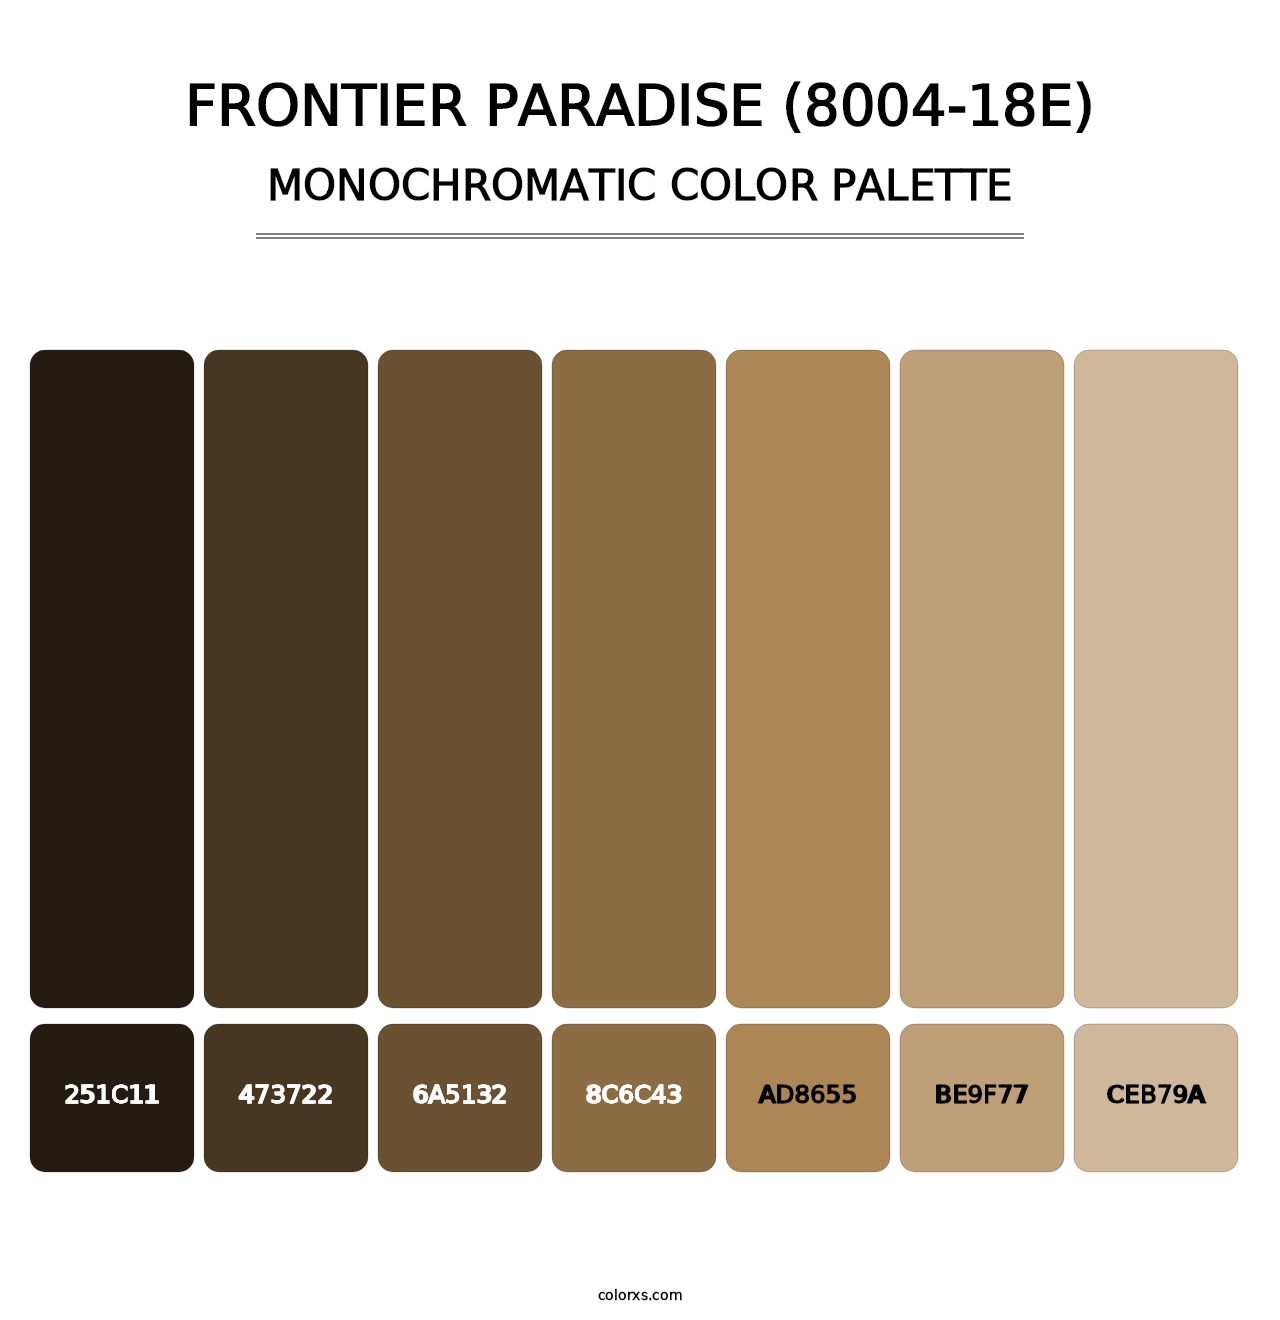 Frontier Paradise (8004-18E) - Monochromatic Color Palette